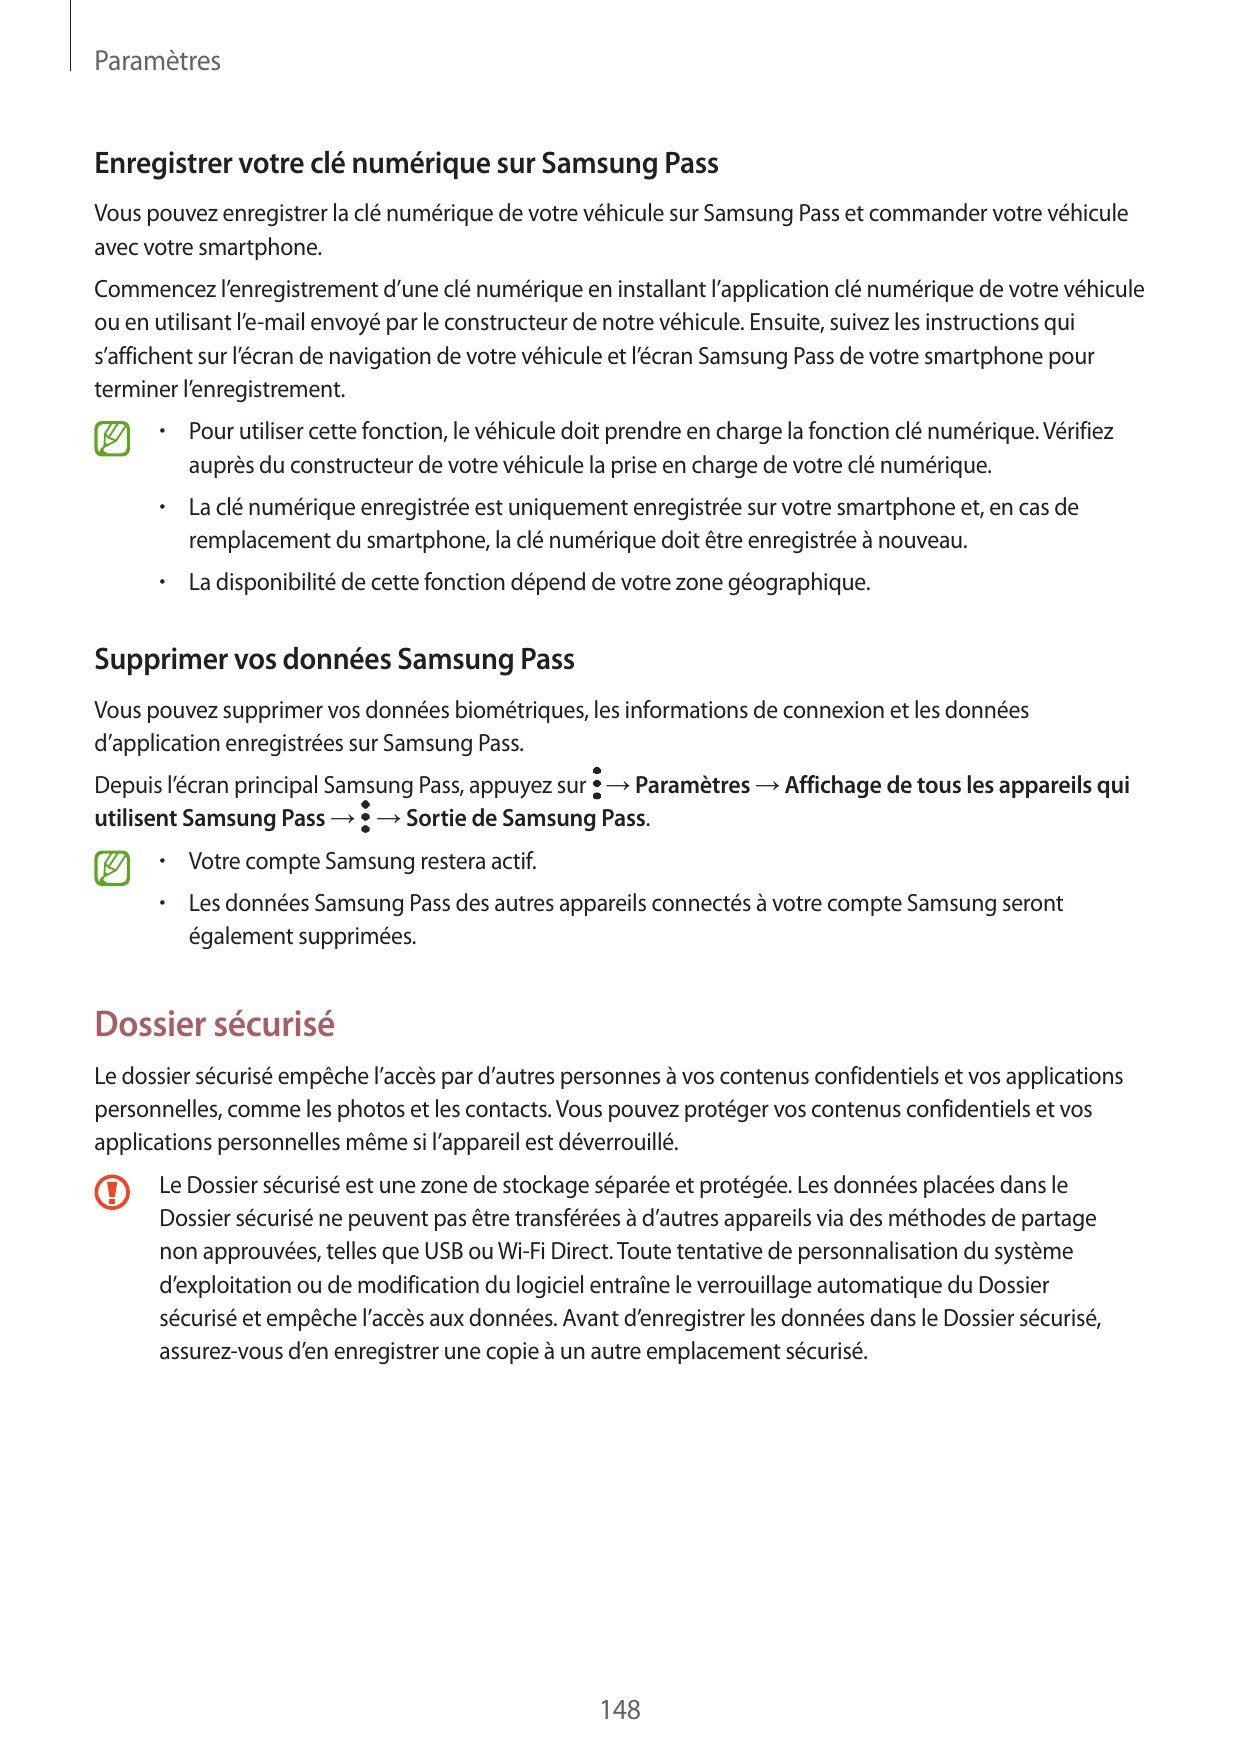 ParamètresEnregistrer votre clé numérique sur Samsung PassVous pouvez enregistrer la clé numérique de votre véhicule sur Samsung